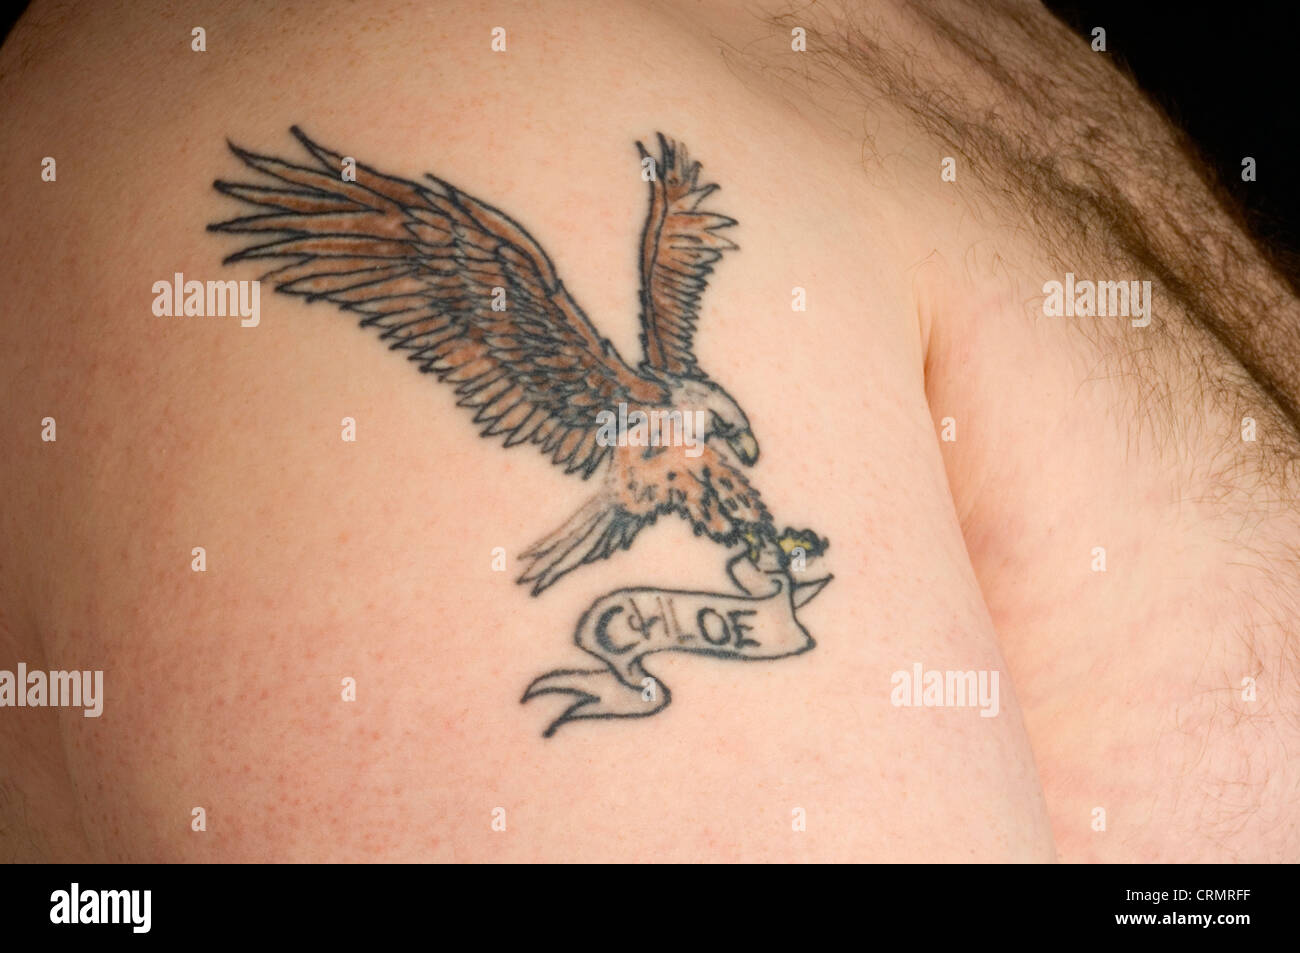 Close-up of a tattoo eagle avec Chloe nom sur le bras d'un homme. Banque D'Images